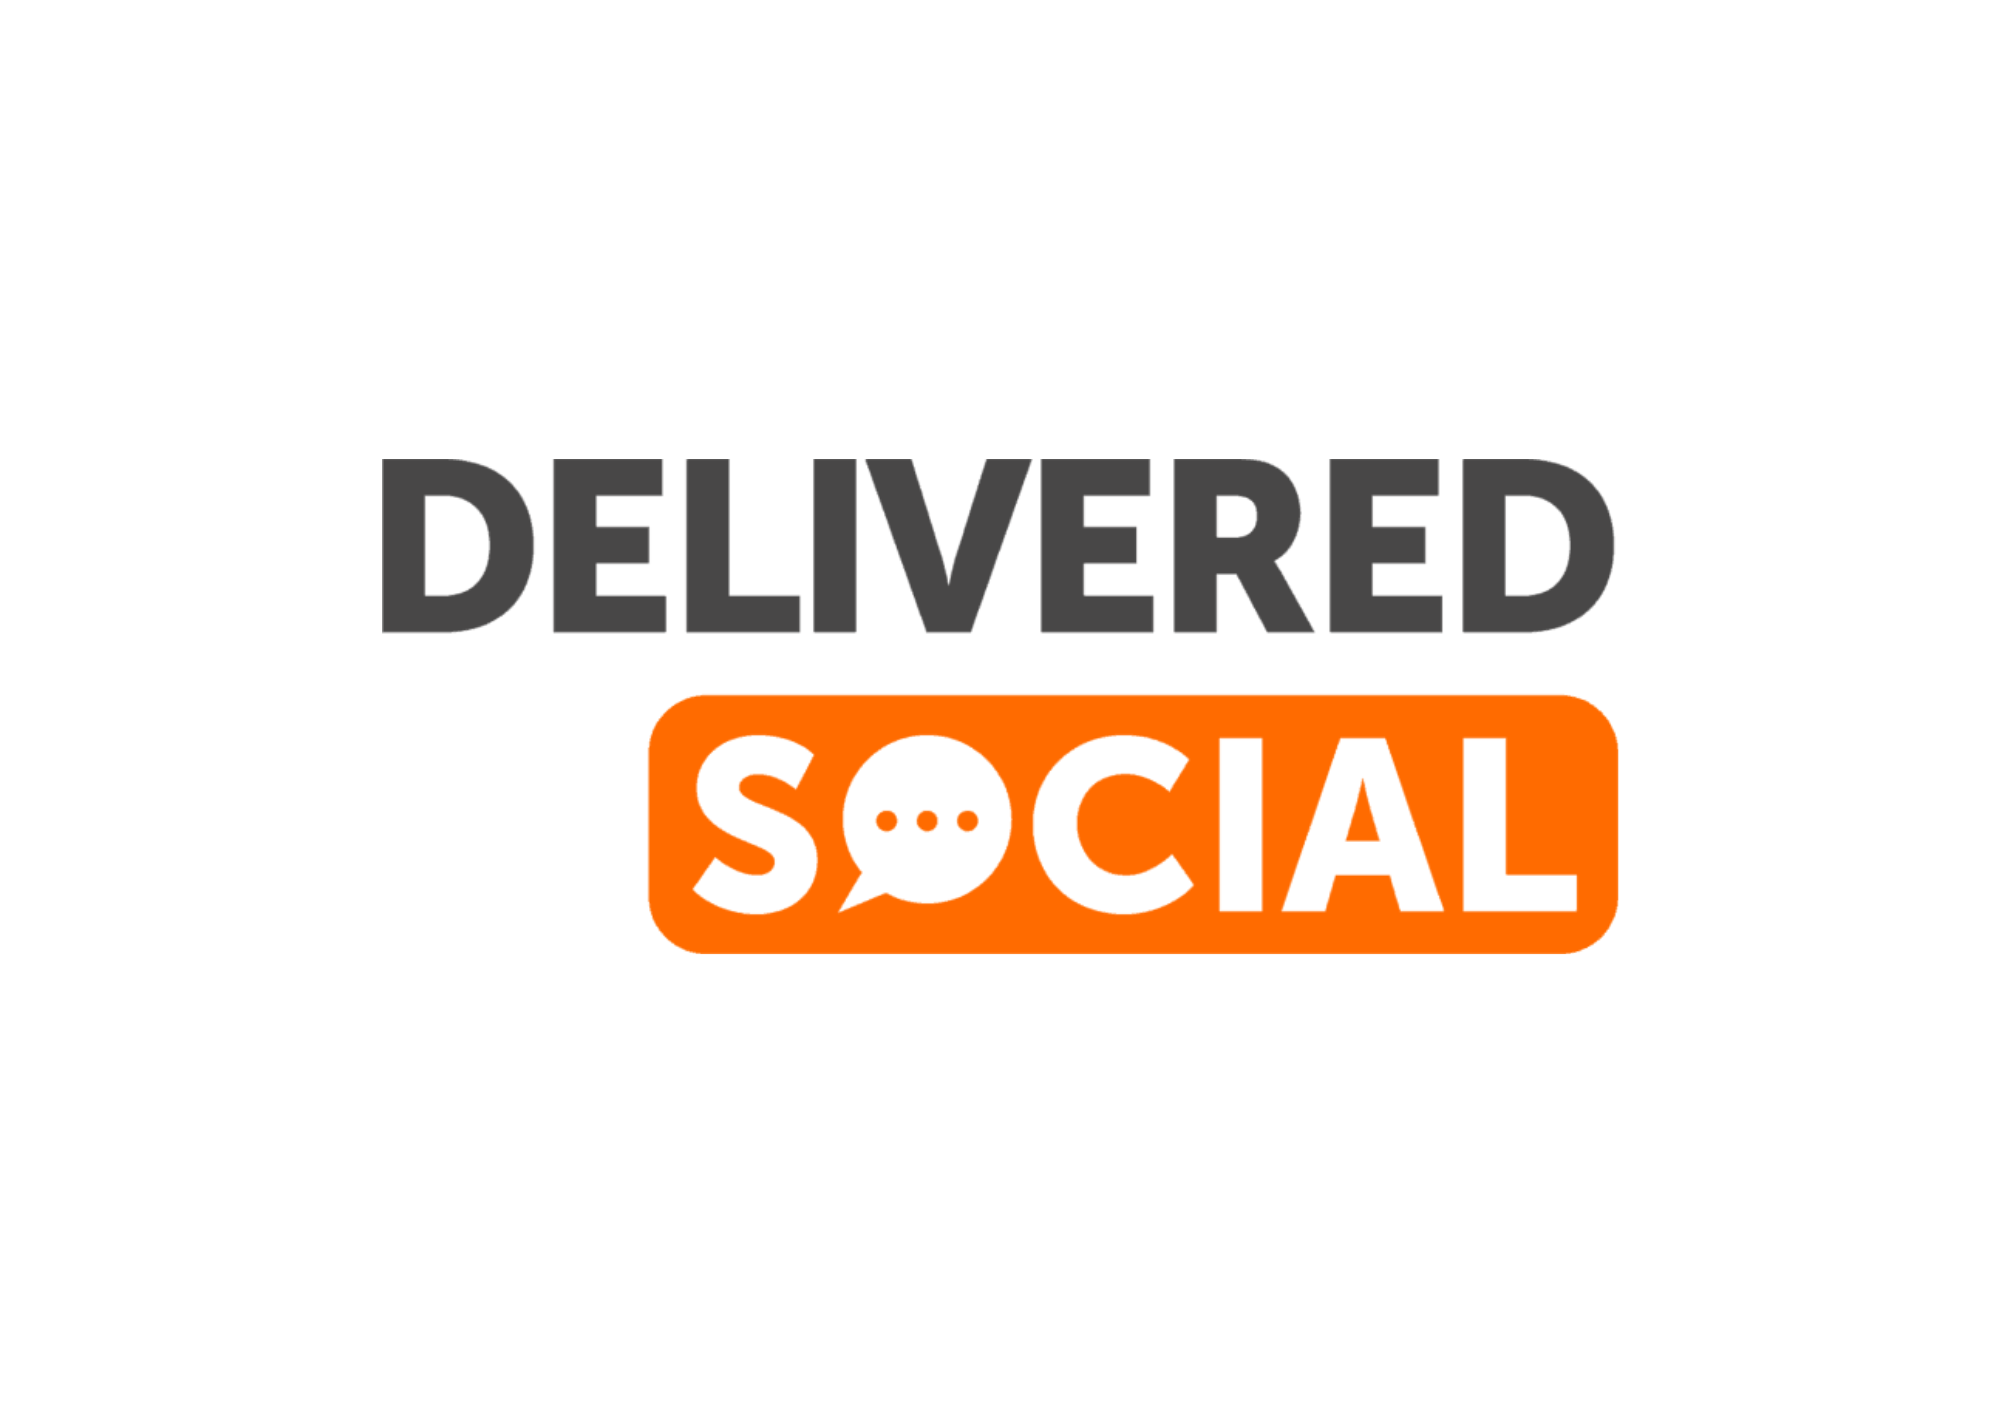 logo for delivered social